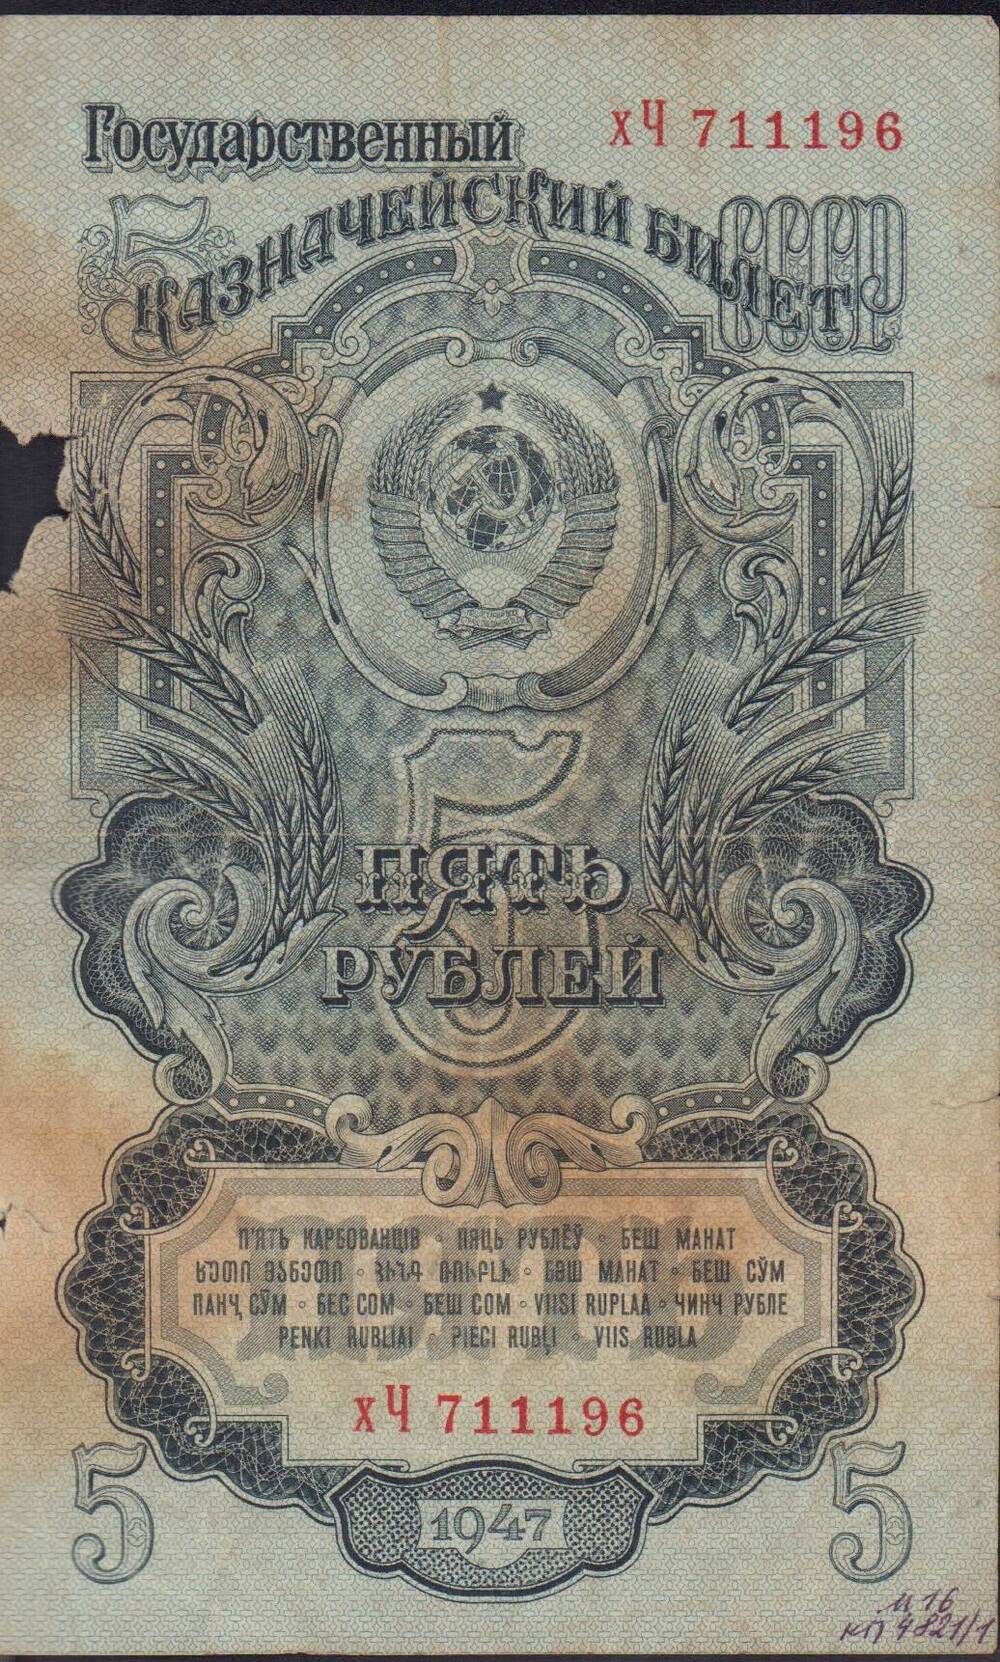 Билет государственный казначейский 5 рублей 1947 года. ХЧ 711196